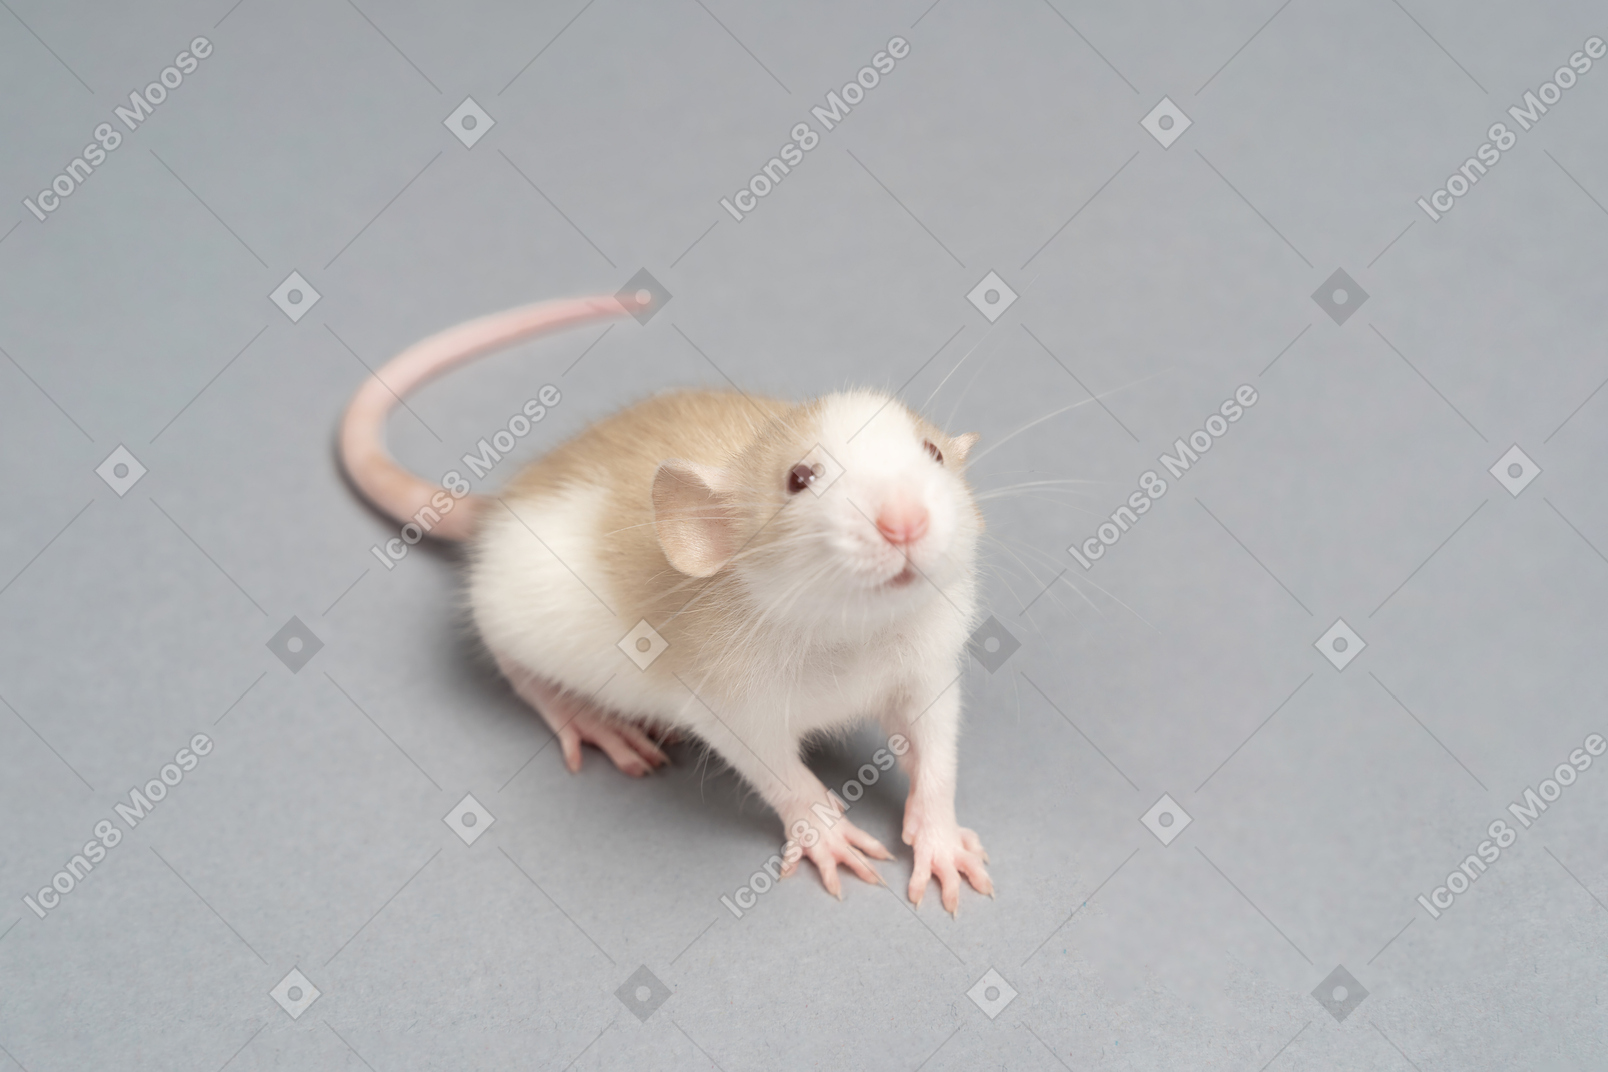 Un curioso ratón blanco y gris